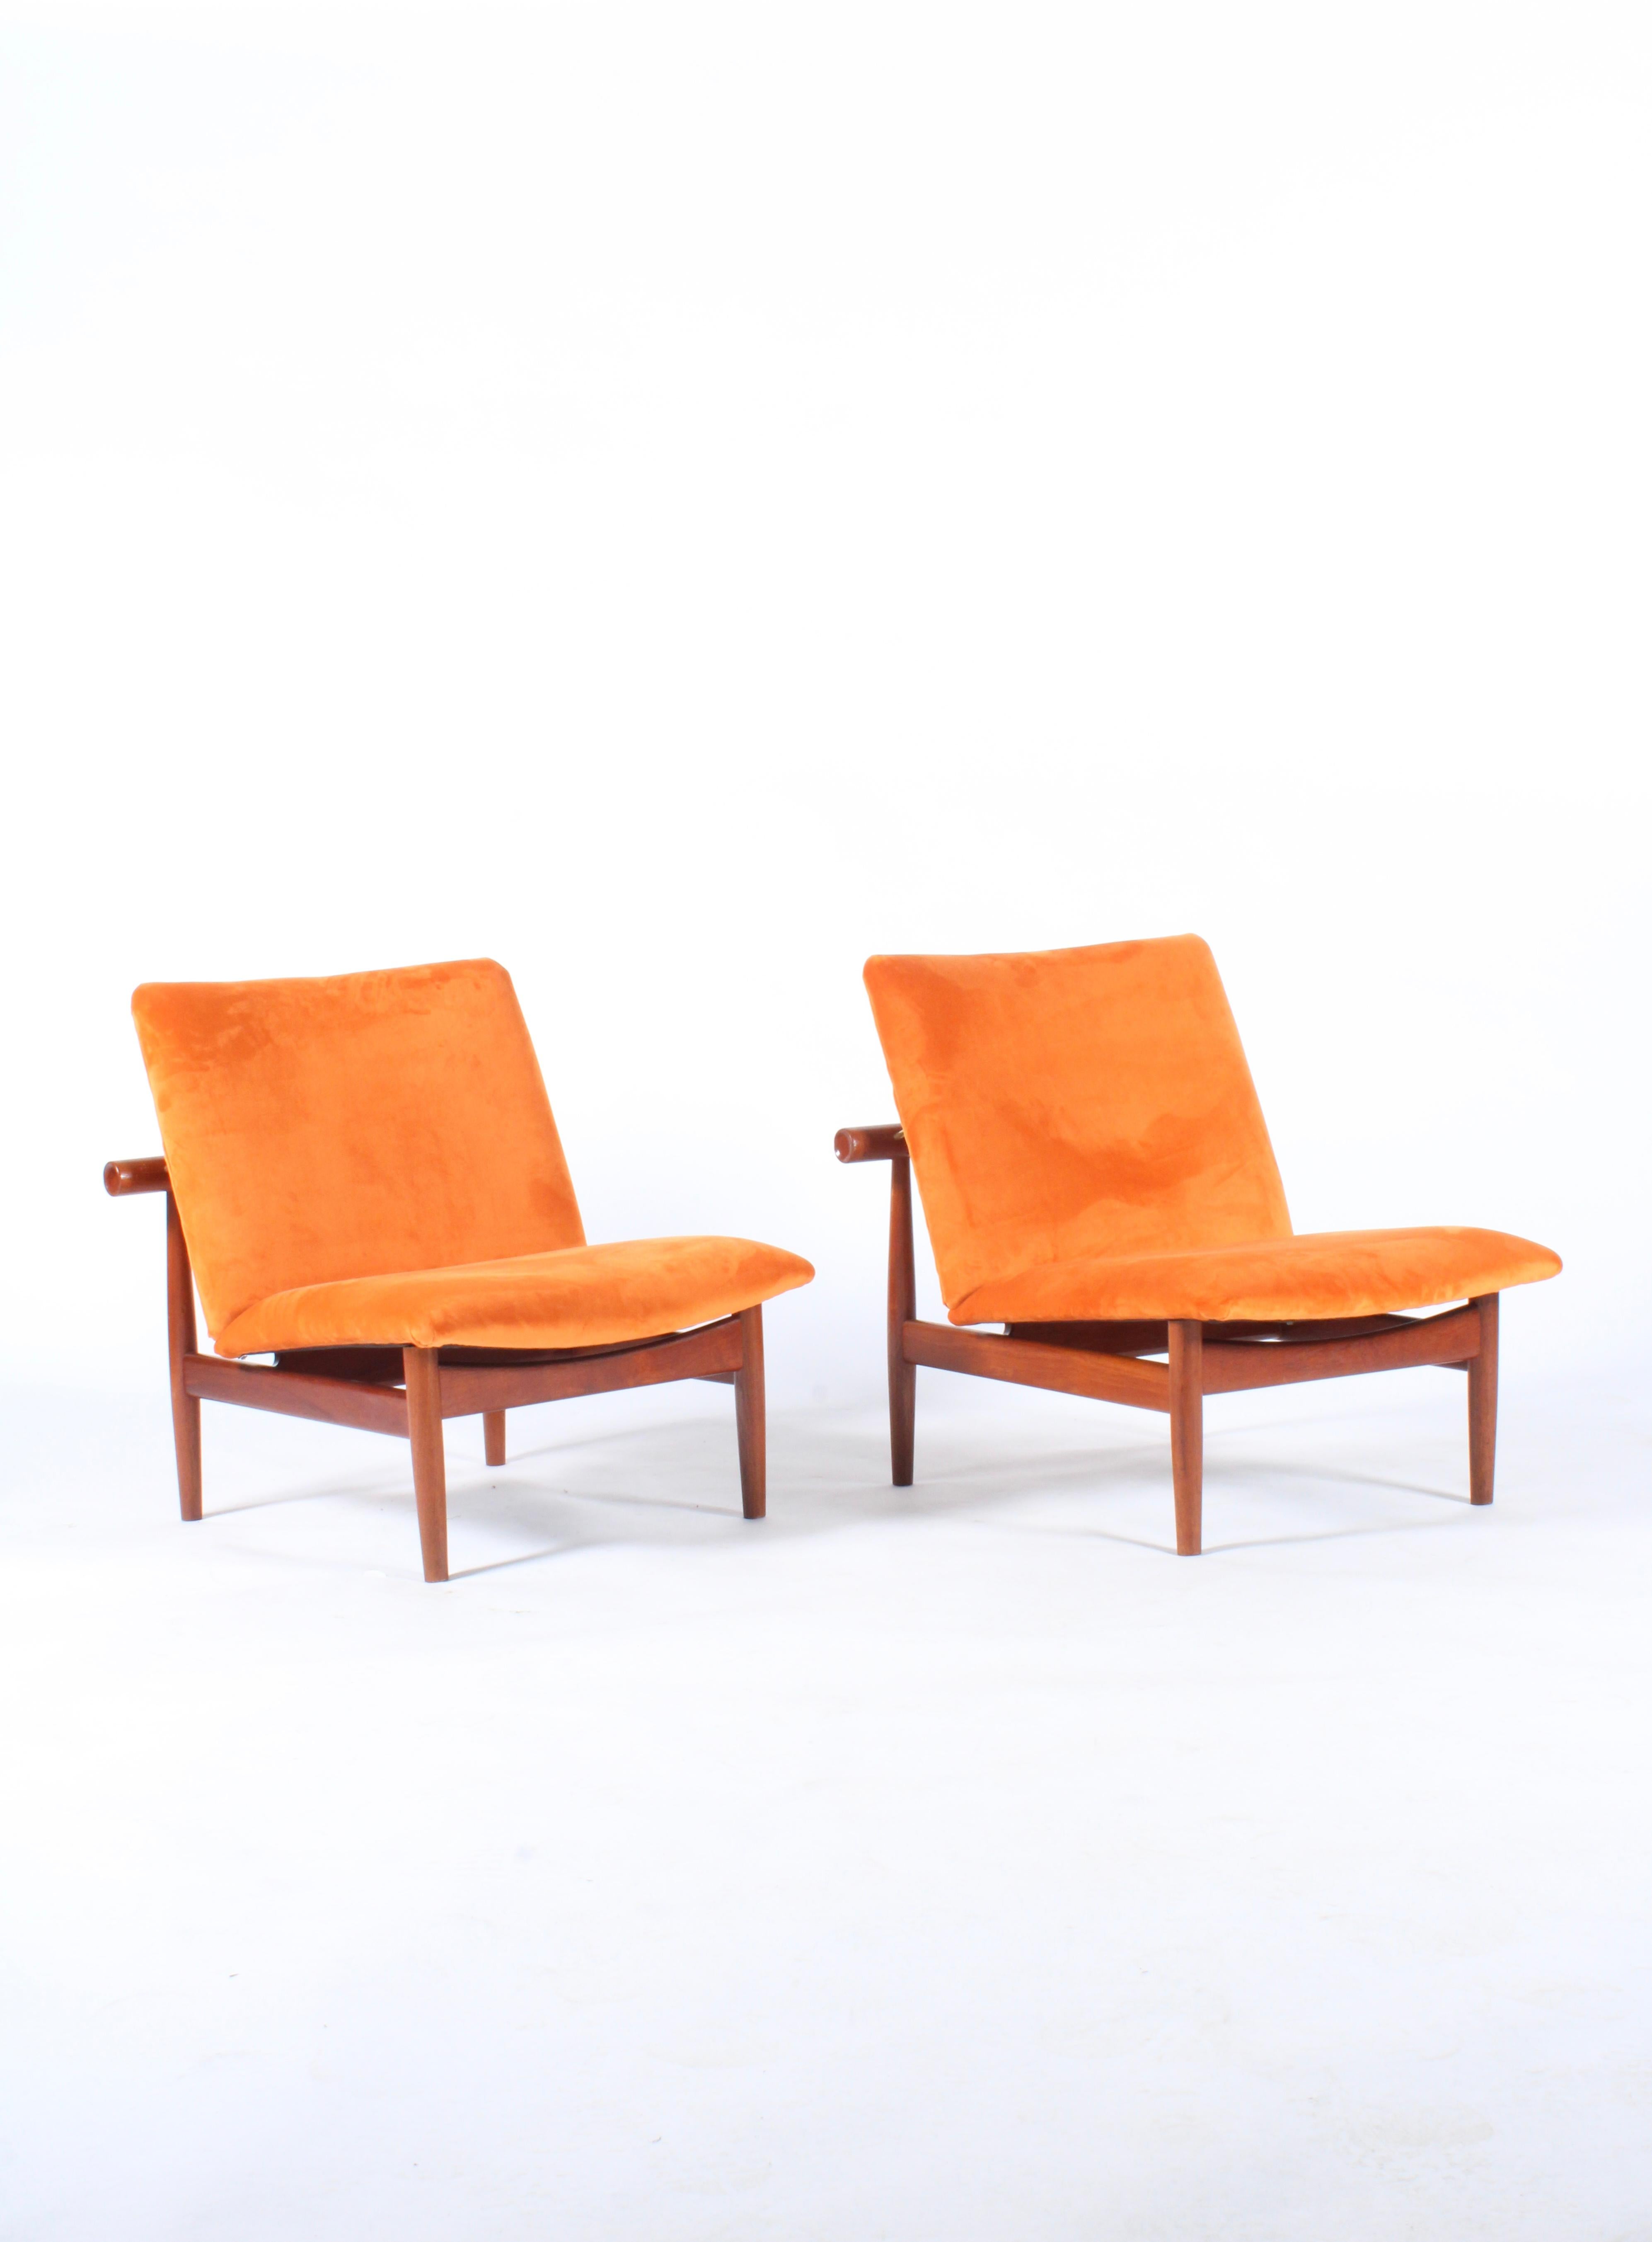 Pair of Iconic Danish Design Japan Chairs by Finn Juhl for France & Daverkosen 7